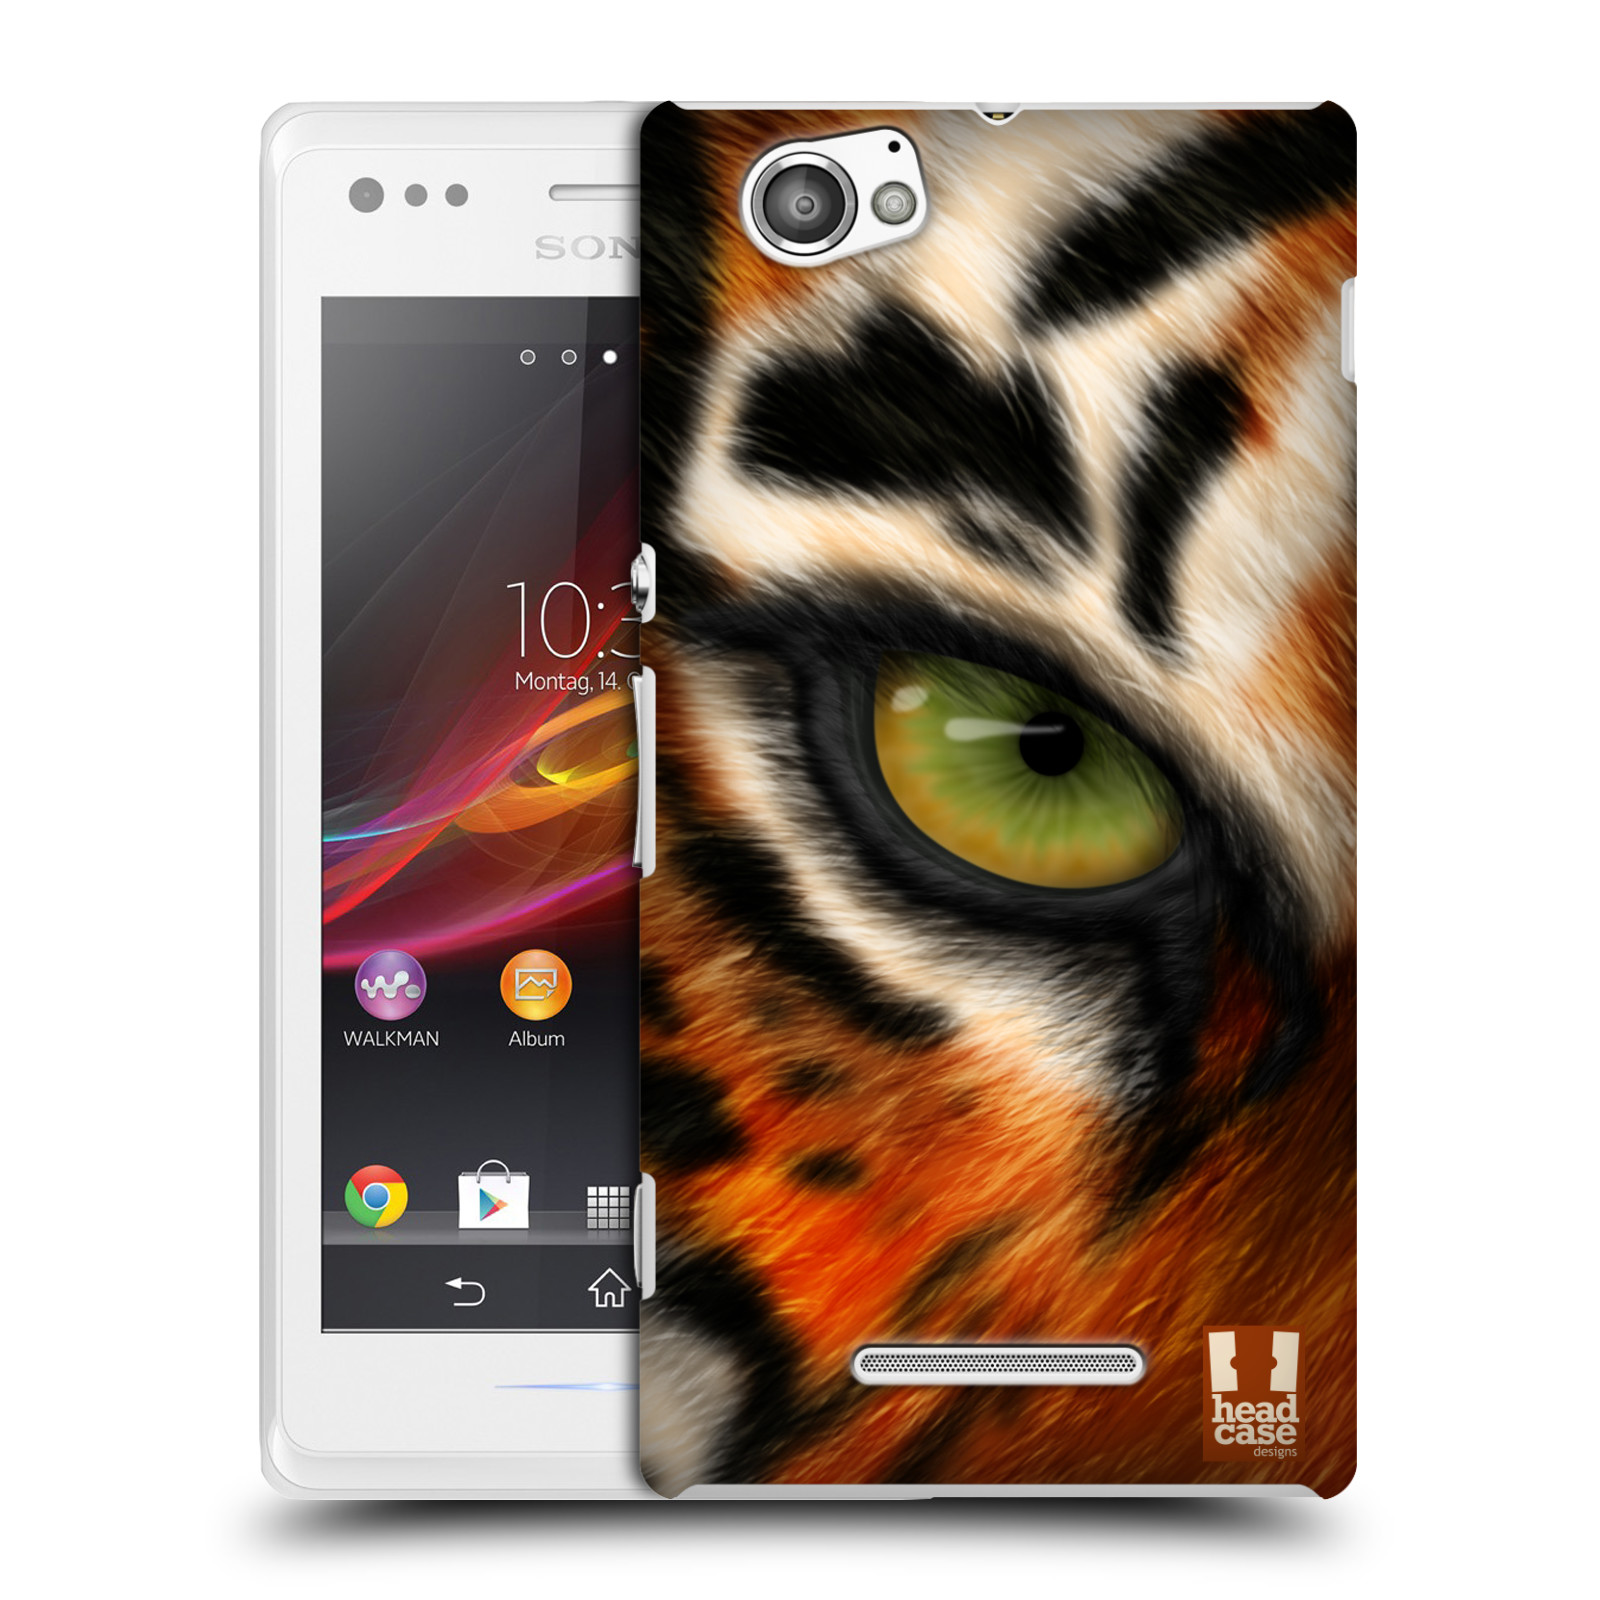 HEAD CASE plastový obal na mobil Sony Xperia M vzor pohled zvířete oko tygr